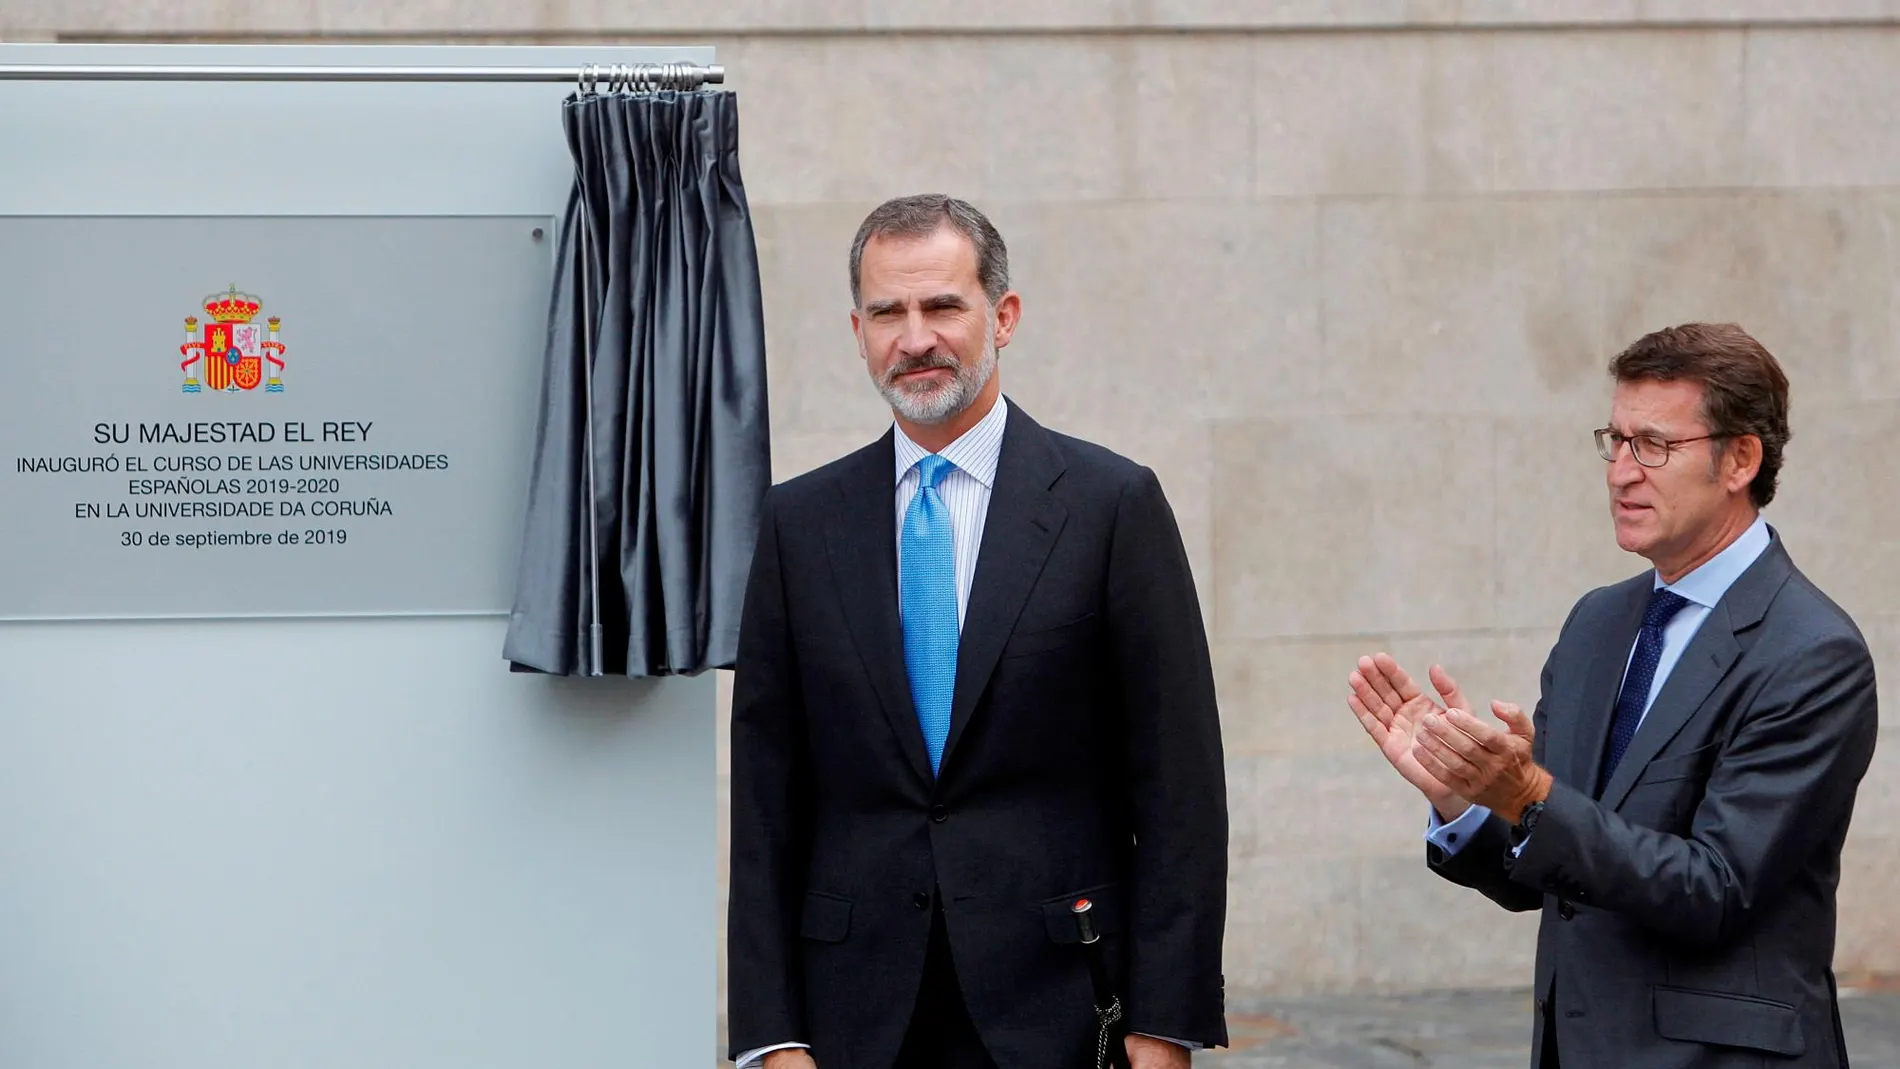 El rey Felipe VI acompañado por el presidente de la Xunta, Alberto Núñez Feijóo, durante la inauguración del curso universitario a nivel nacional